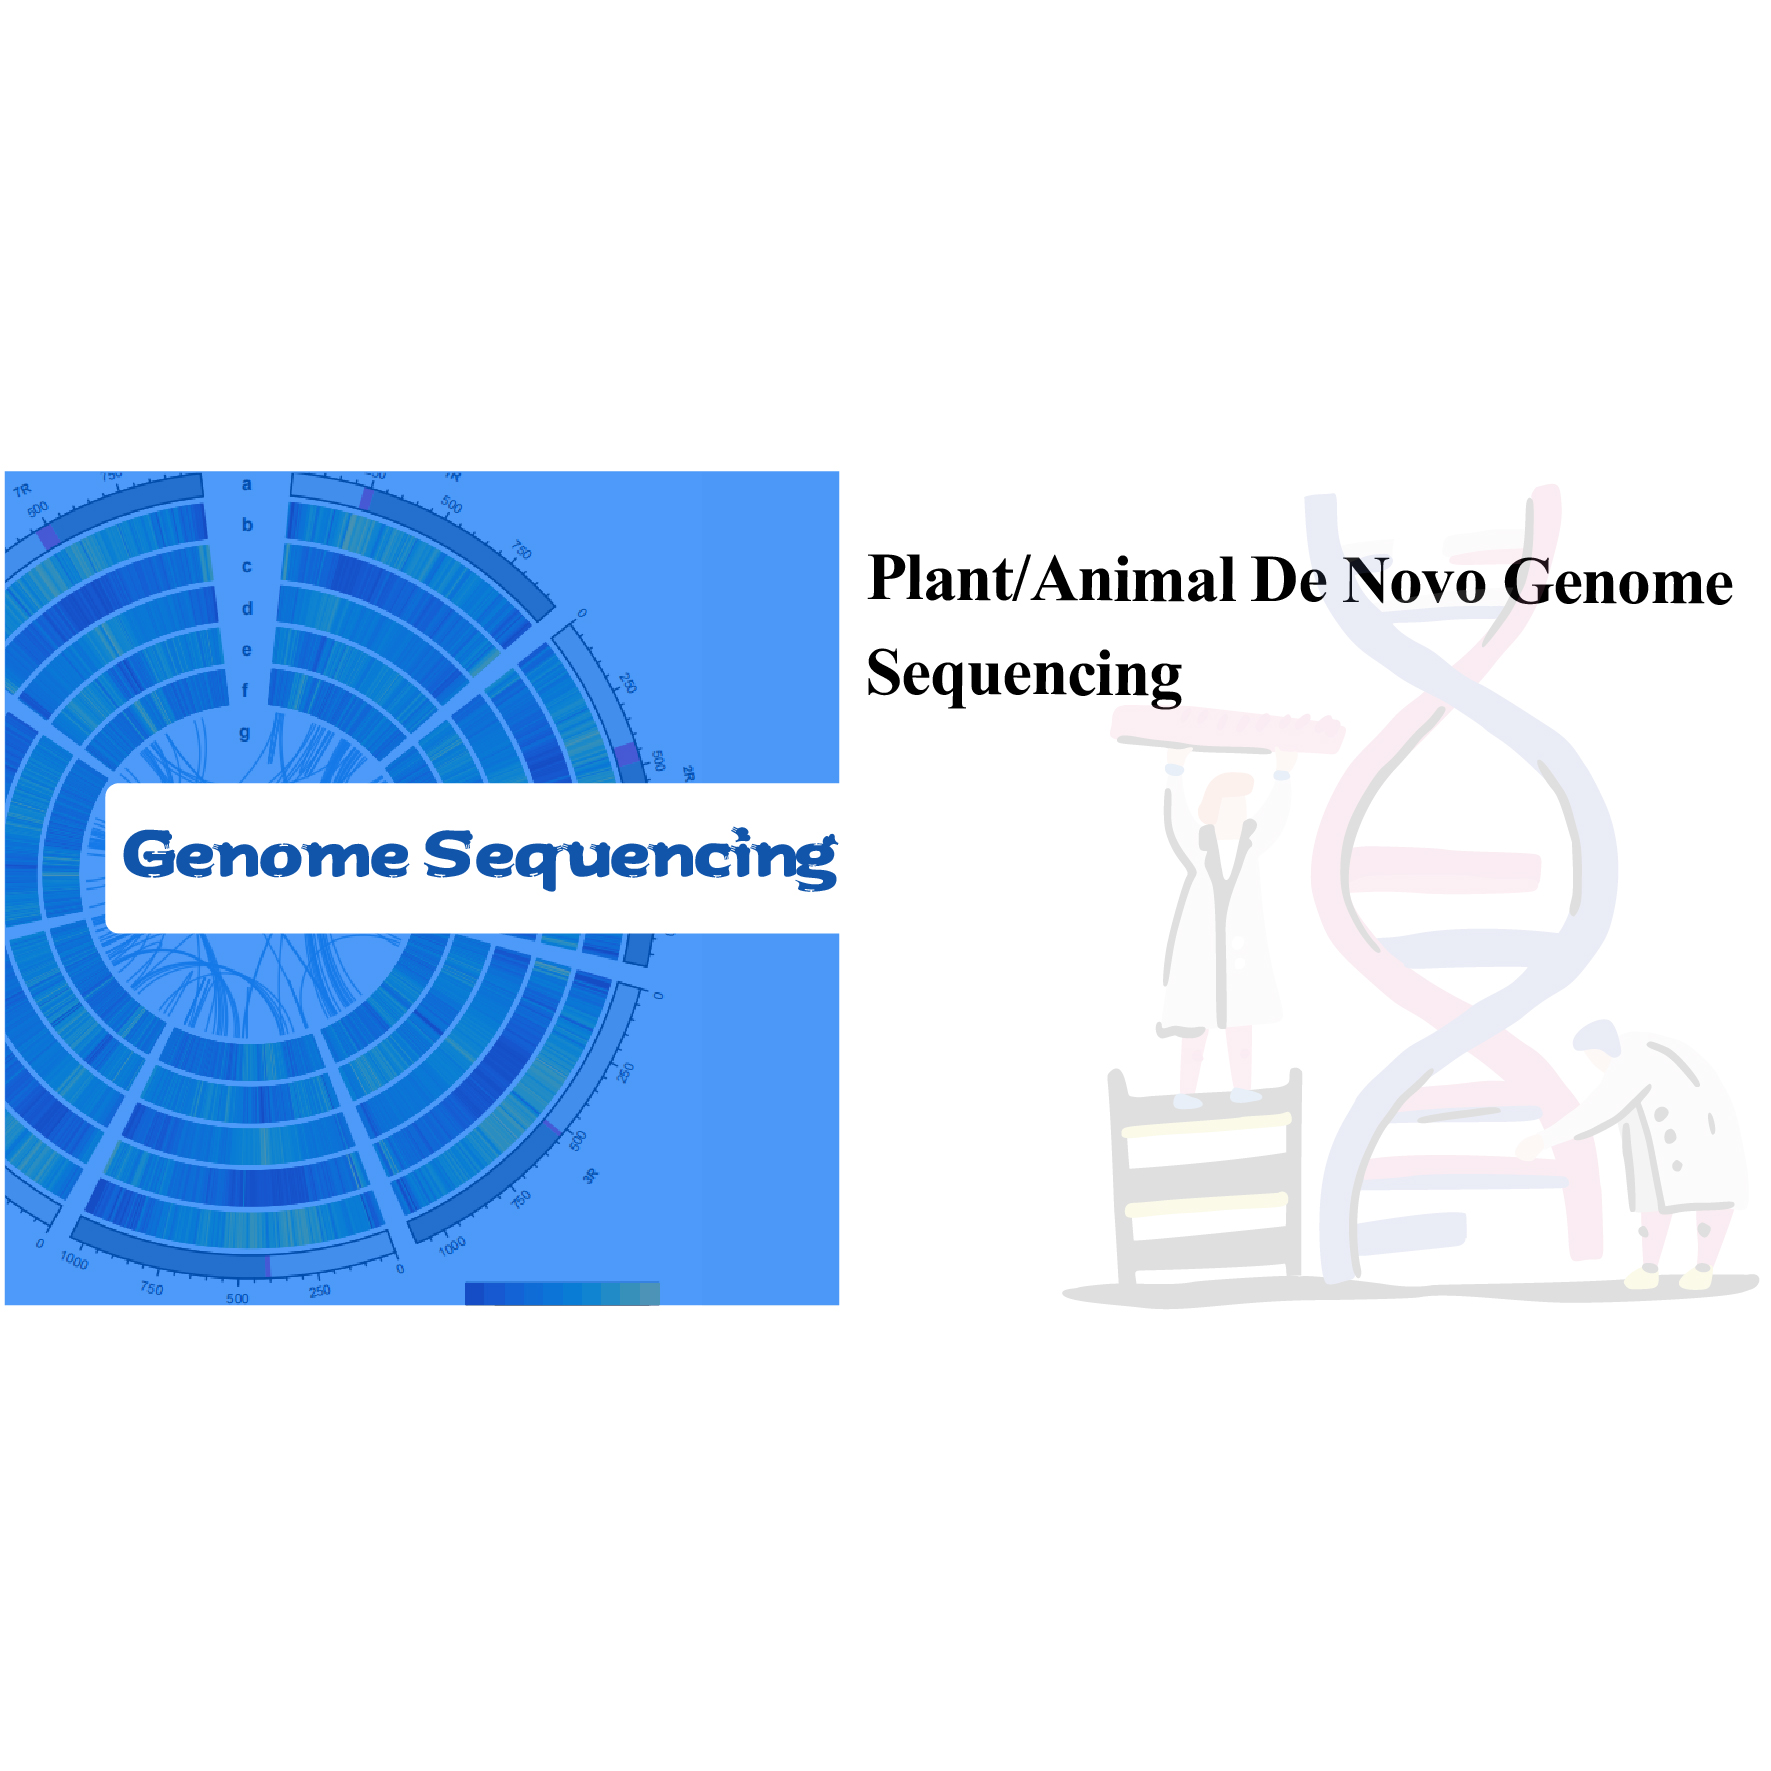 Zavamaniry/biby De Novo Genome Sequencing